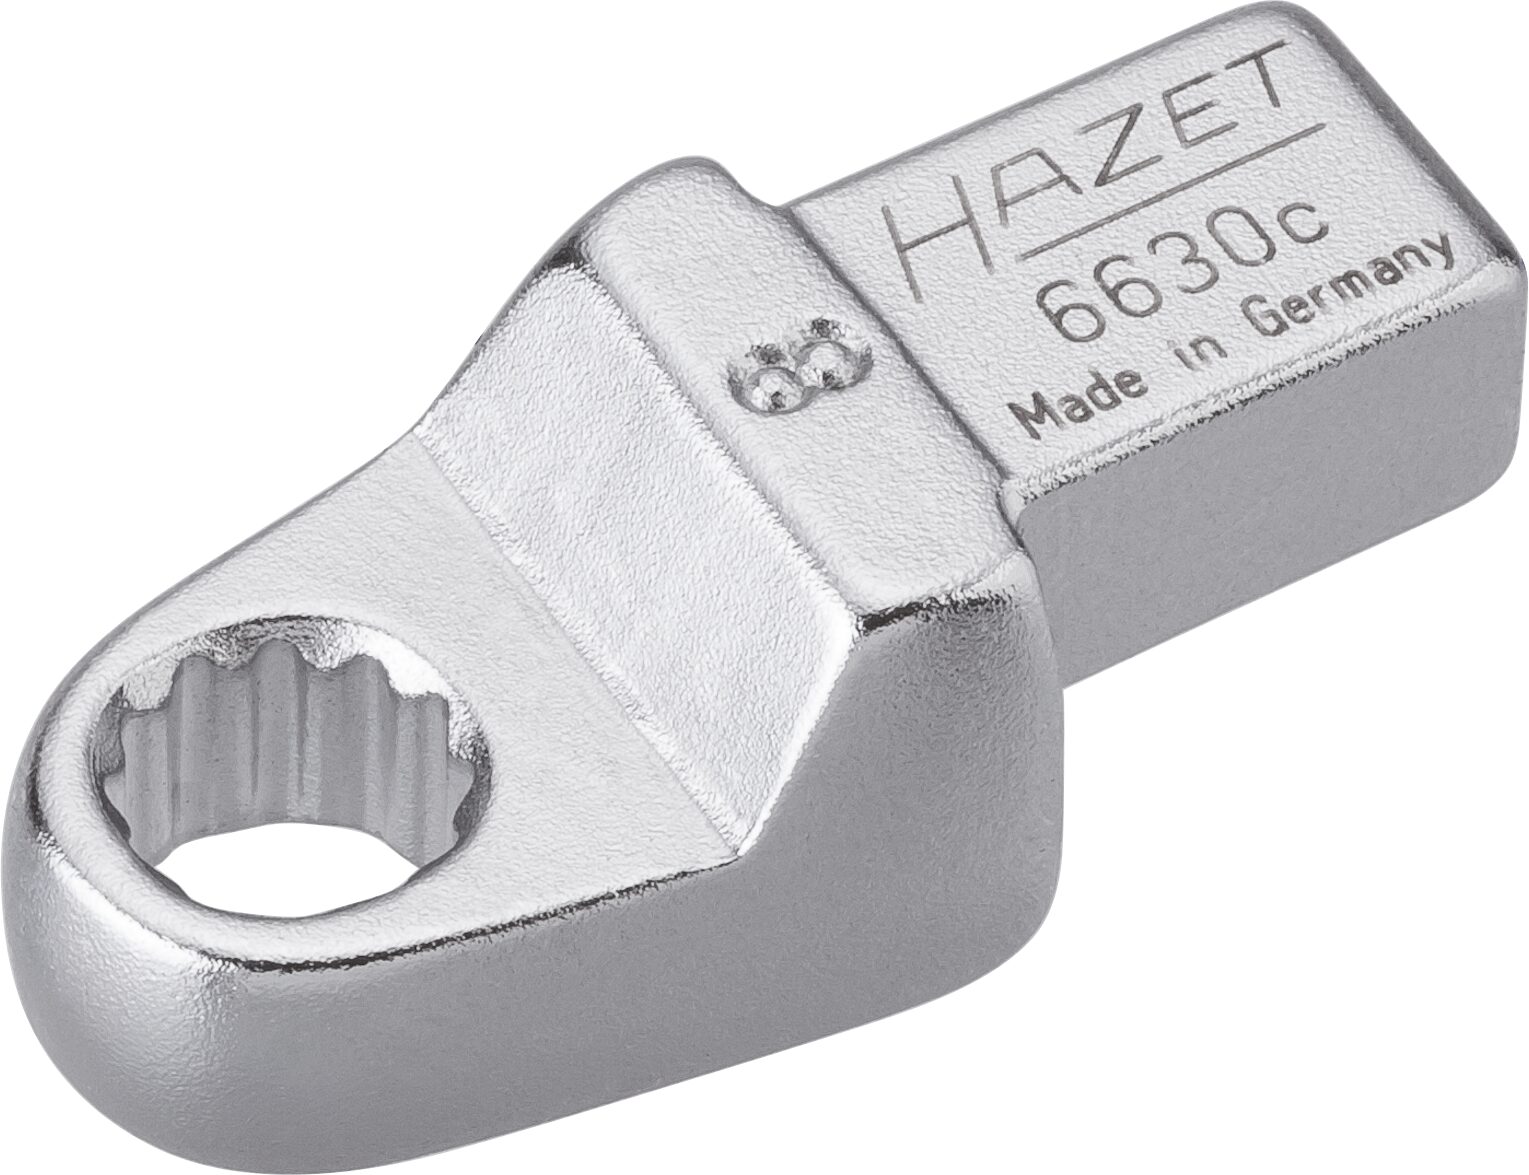 HAZET Einsteck-Ringschlüssel 6630C-8 · Einsteck-Vierkant 9 x 12 mm · Außen Doppel-Sechskant-Tractionsprofil · 8 mm